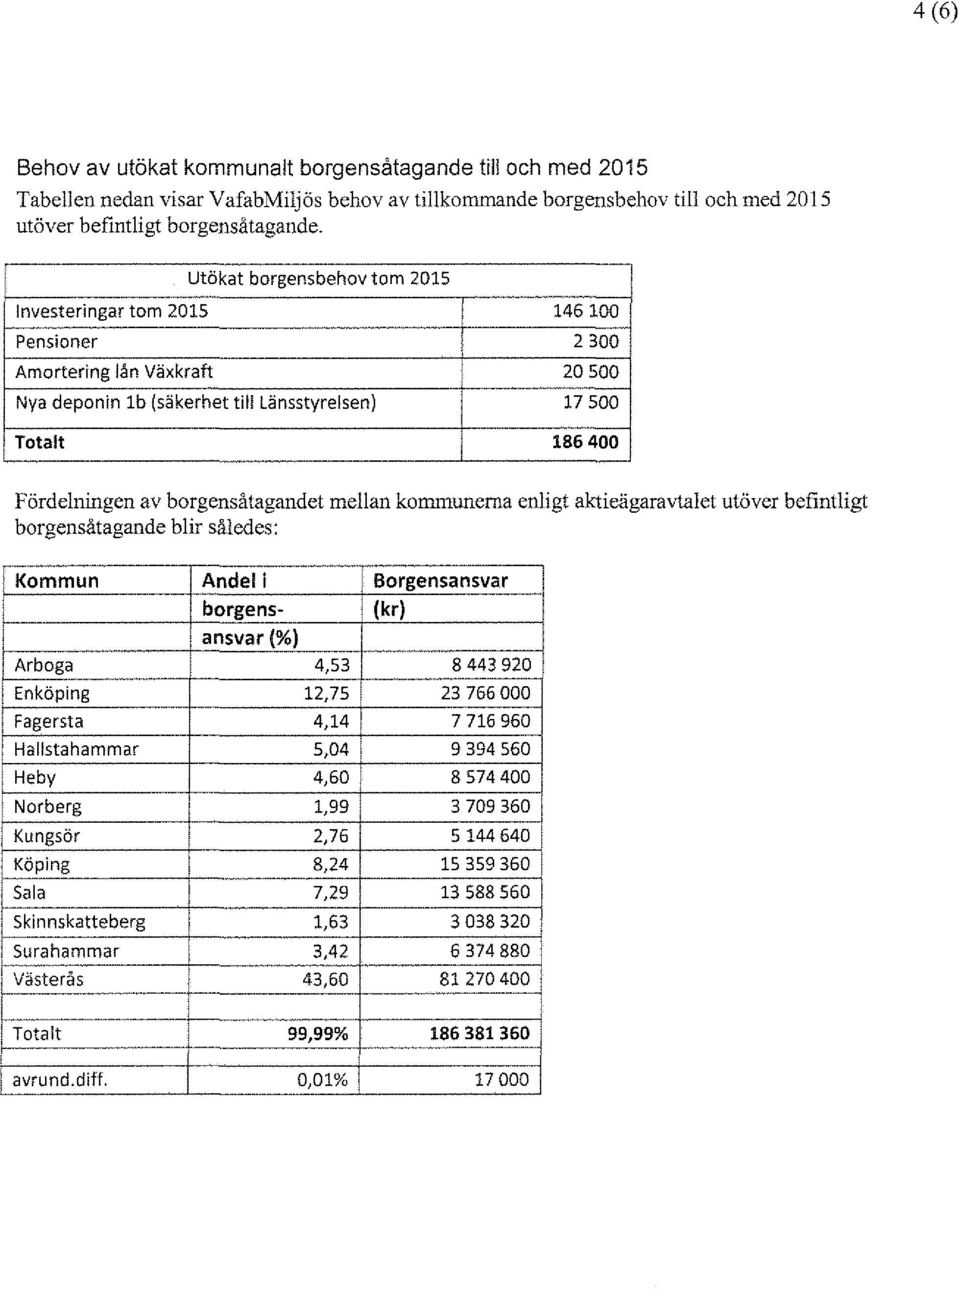 borgensåtagandet mellan kommunerna enligt aktieägaravtalet utöver befintligt borgensåtagande blir således: Kommun Andel i Borgensansvar borgens- ansvar(%) (kr) Arboga 4,53 8 443 920 En köping 12,75